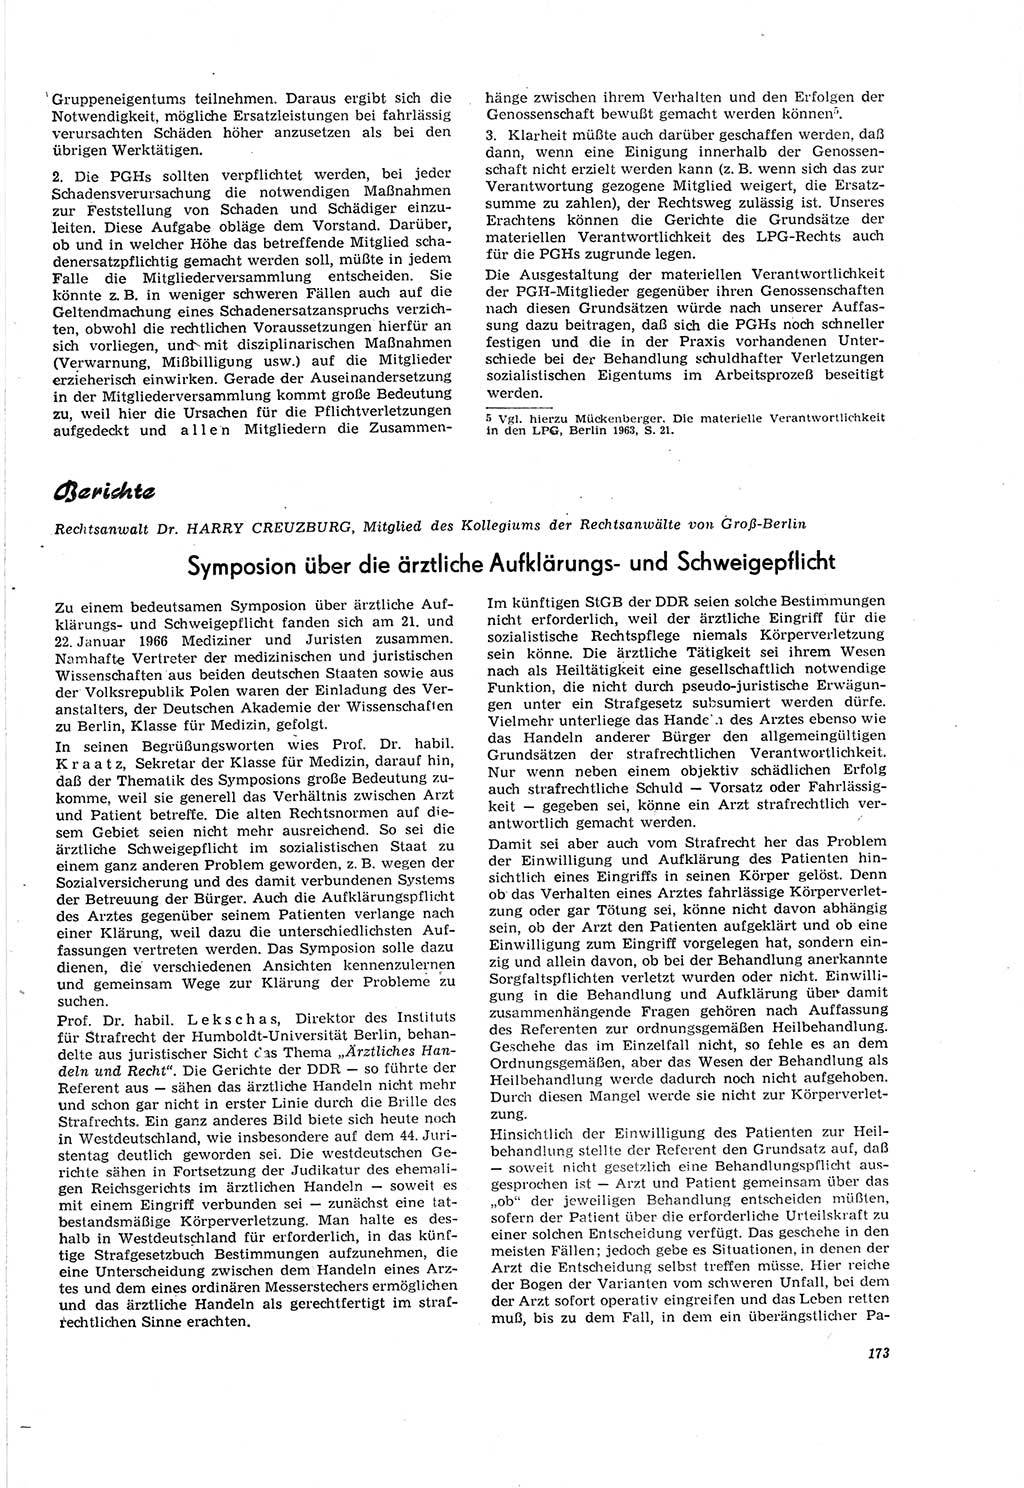 Neue Justiz (NJ), Zeitschrift für Recht und Rechtswissenschaft [Deutsche Demokratische Republik (DDR)], 20. Jahrgang 1966, Seite 173 (NJ DDR 1966, S. 173)